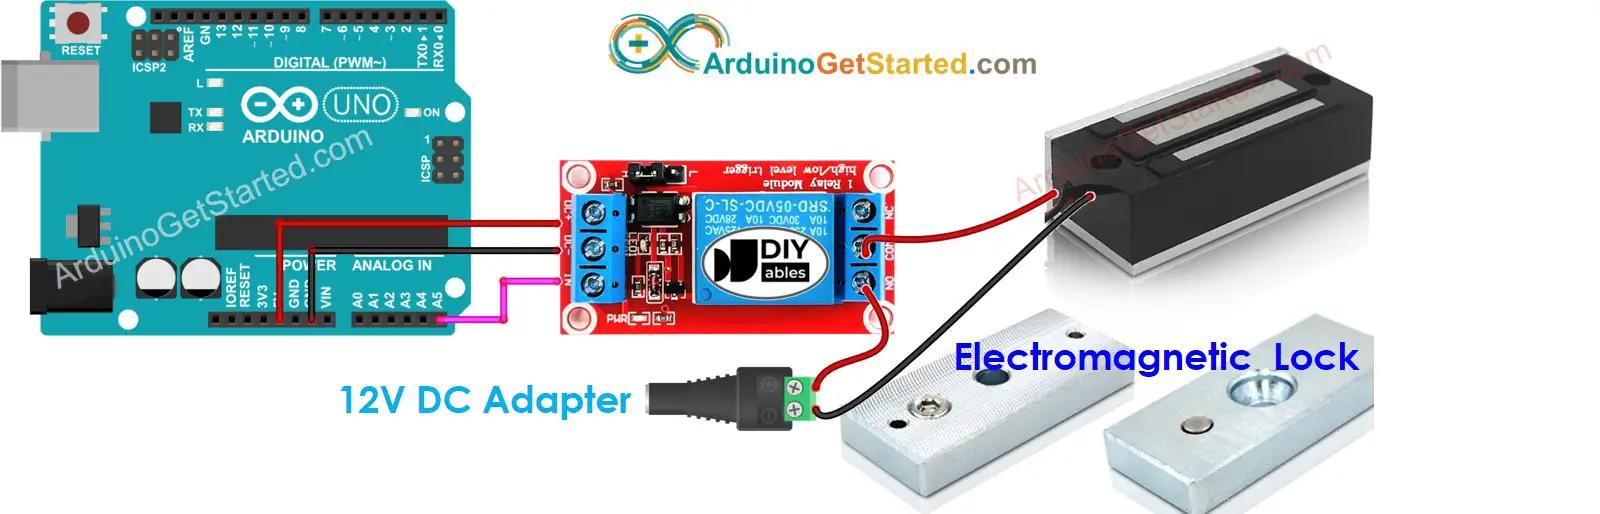 Arduino Electromagnetic Lock Wiring Diagram